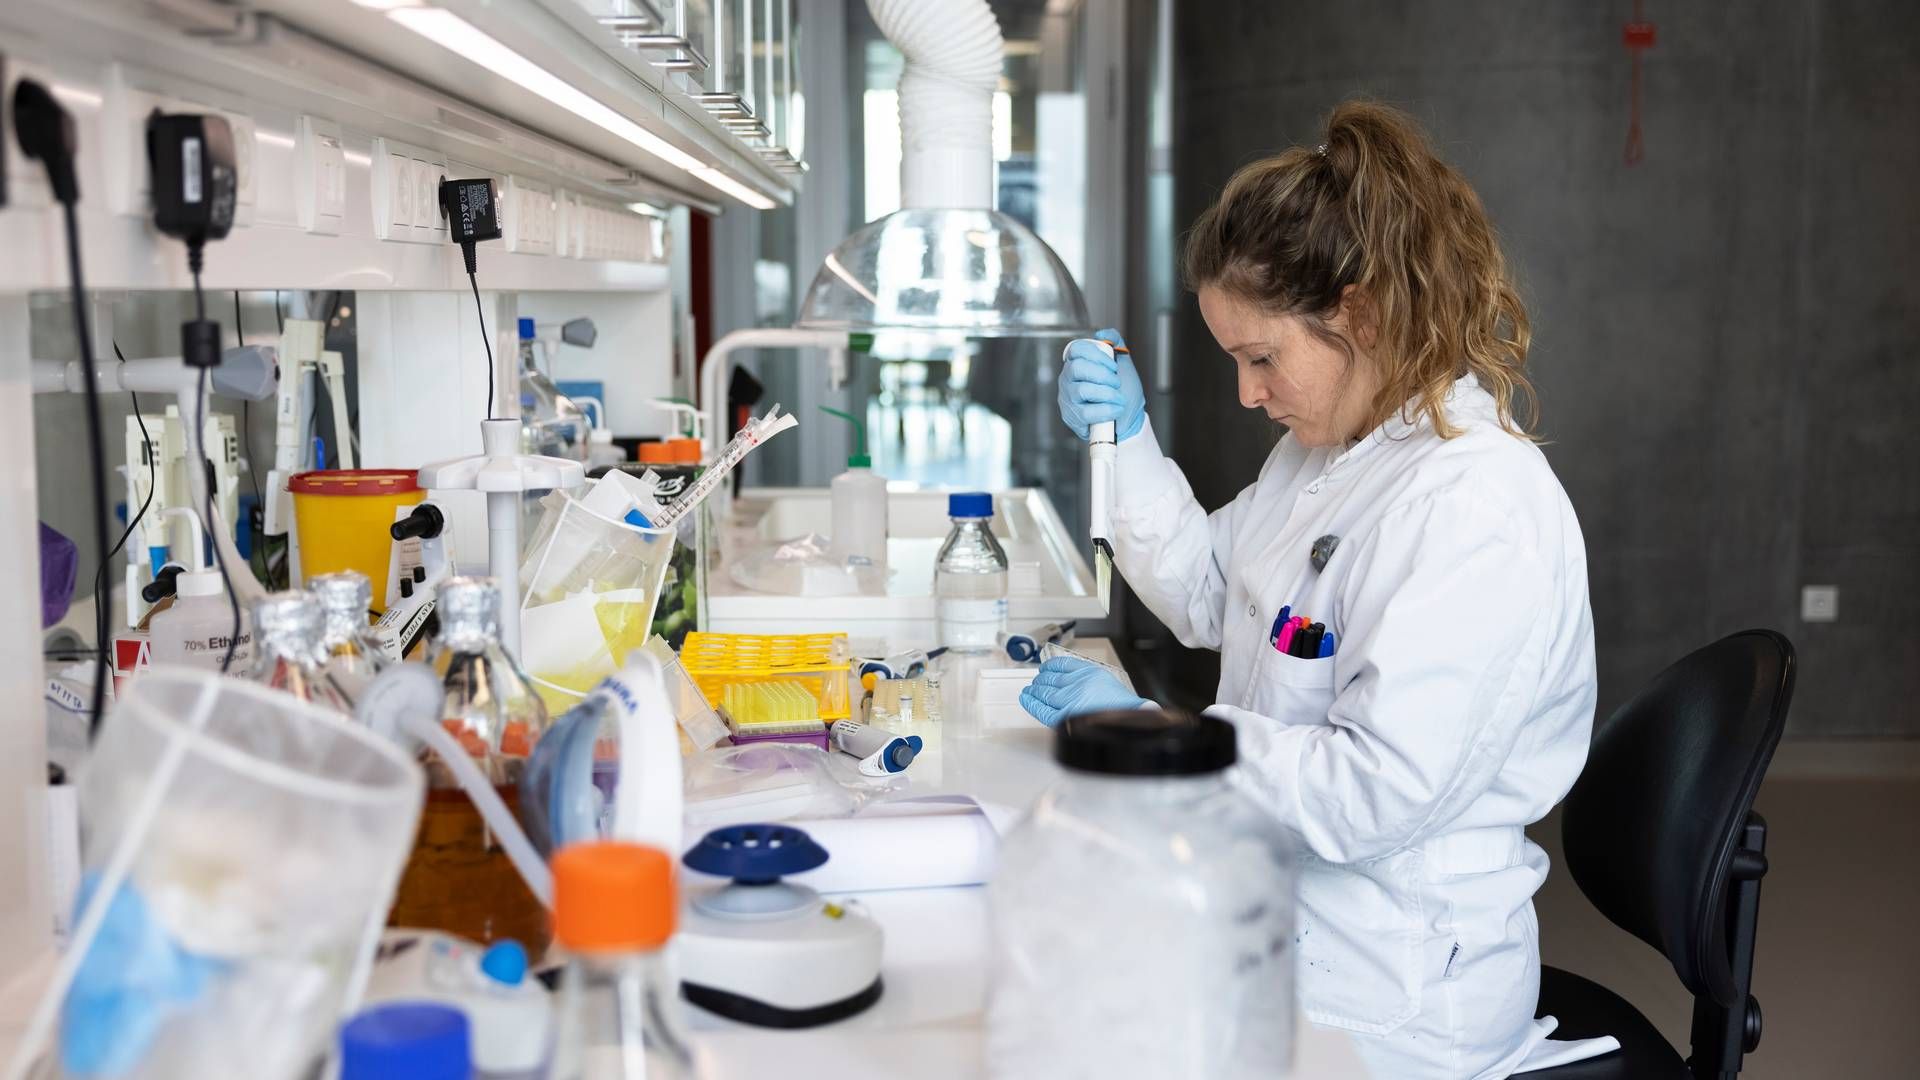 Hounisen Laboratorieudstyr A/S, som leverer og producerer laboratorieudstyr, halverede sin bundlinje i 2022. Direktionen peger på coronapandemien som årsag.